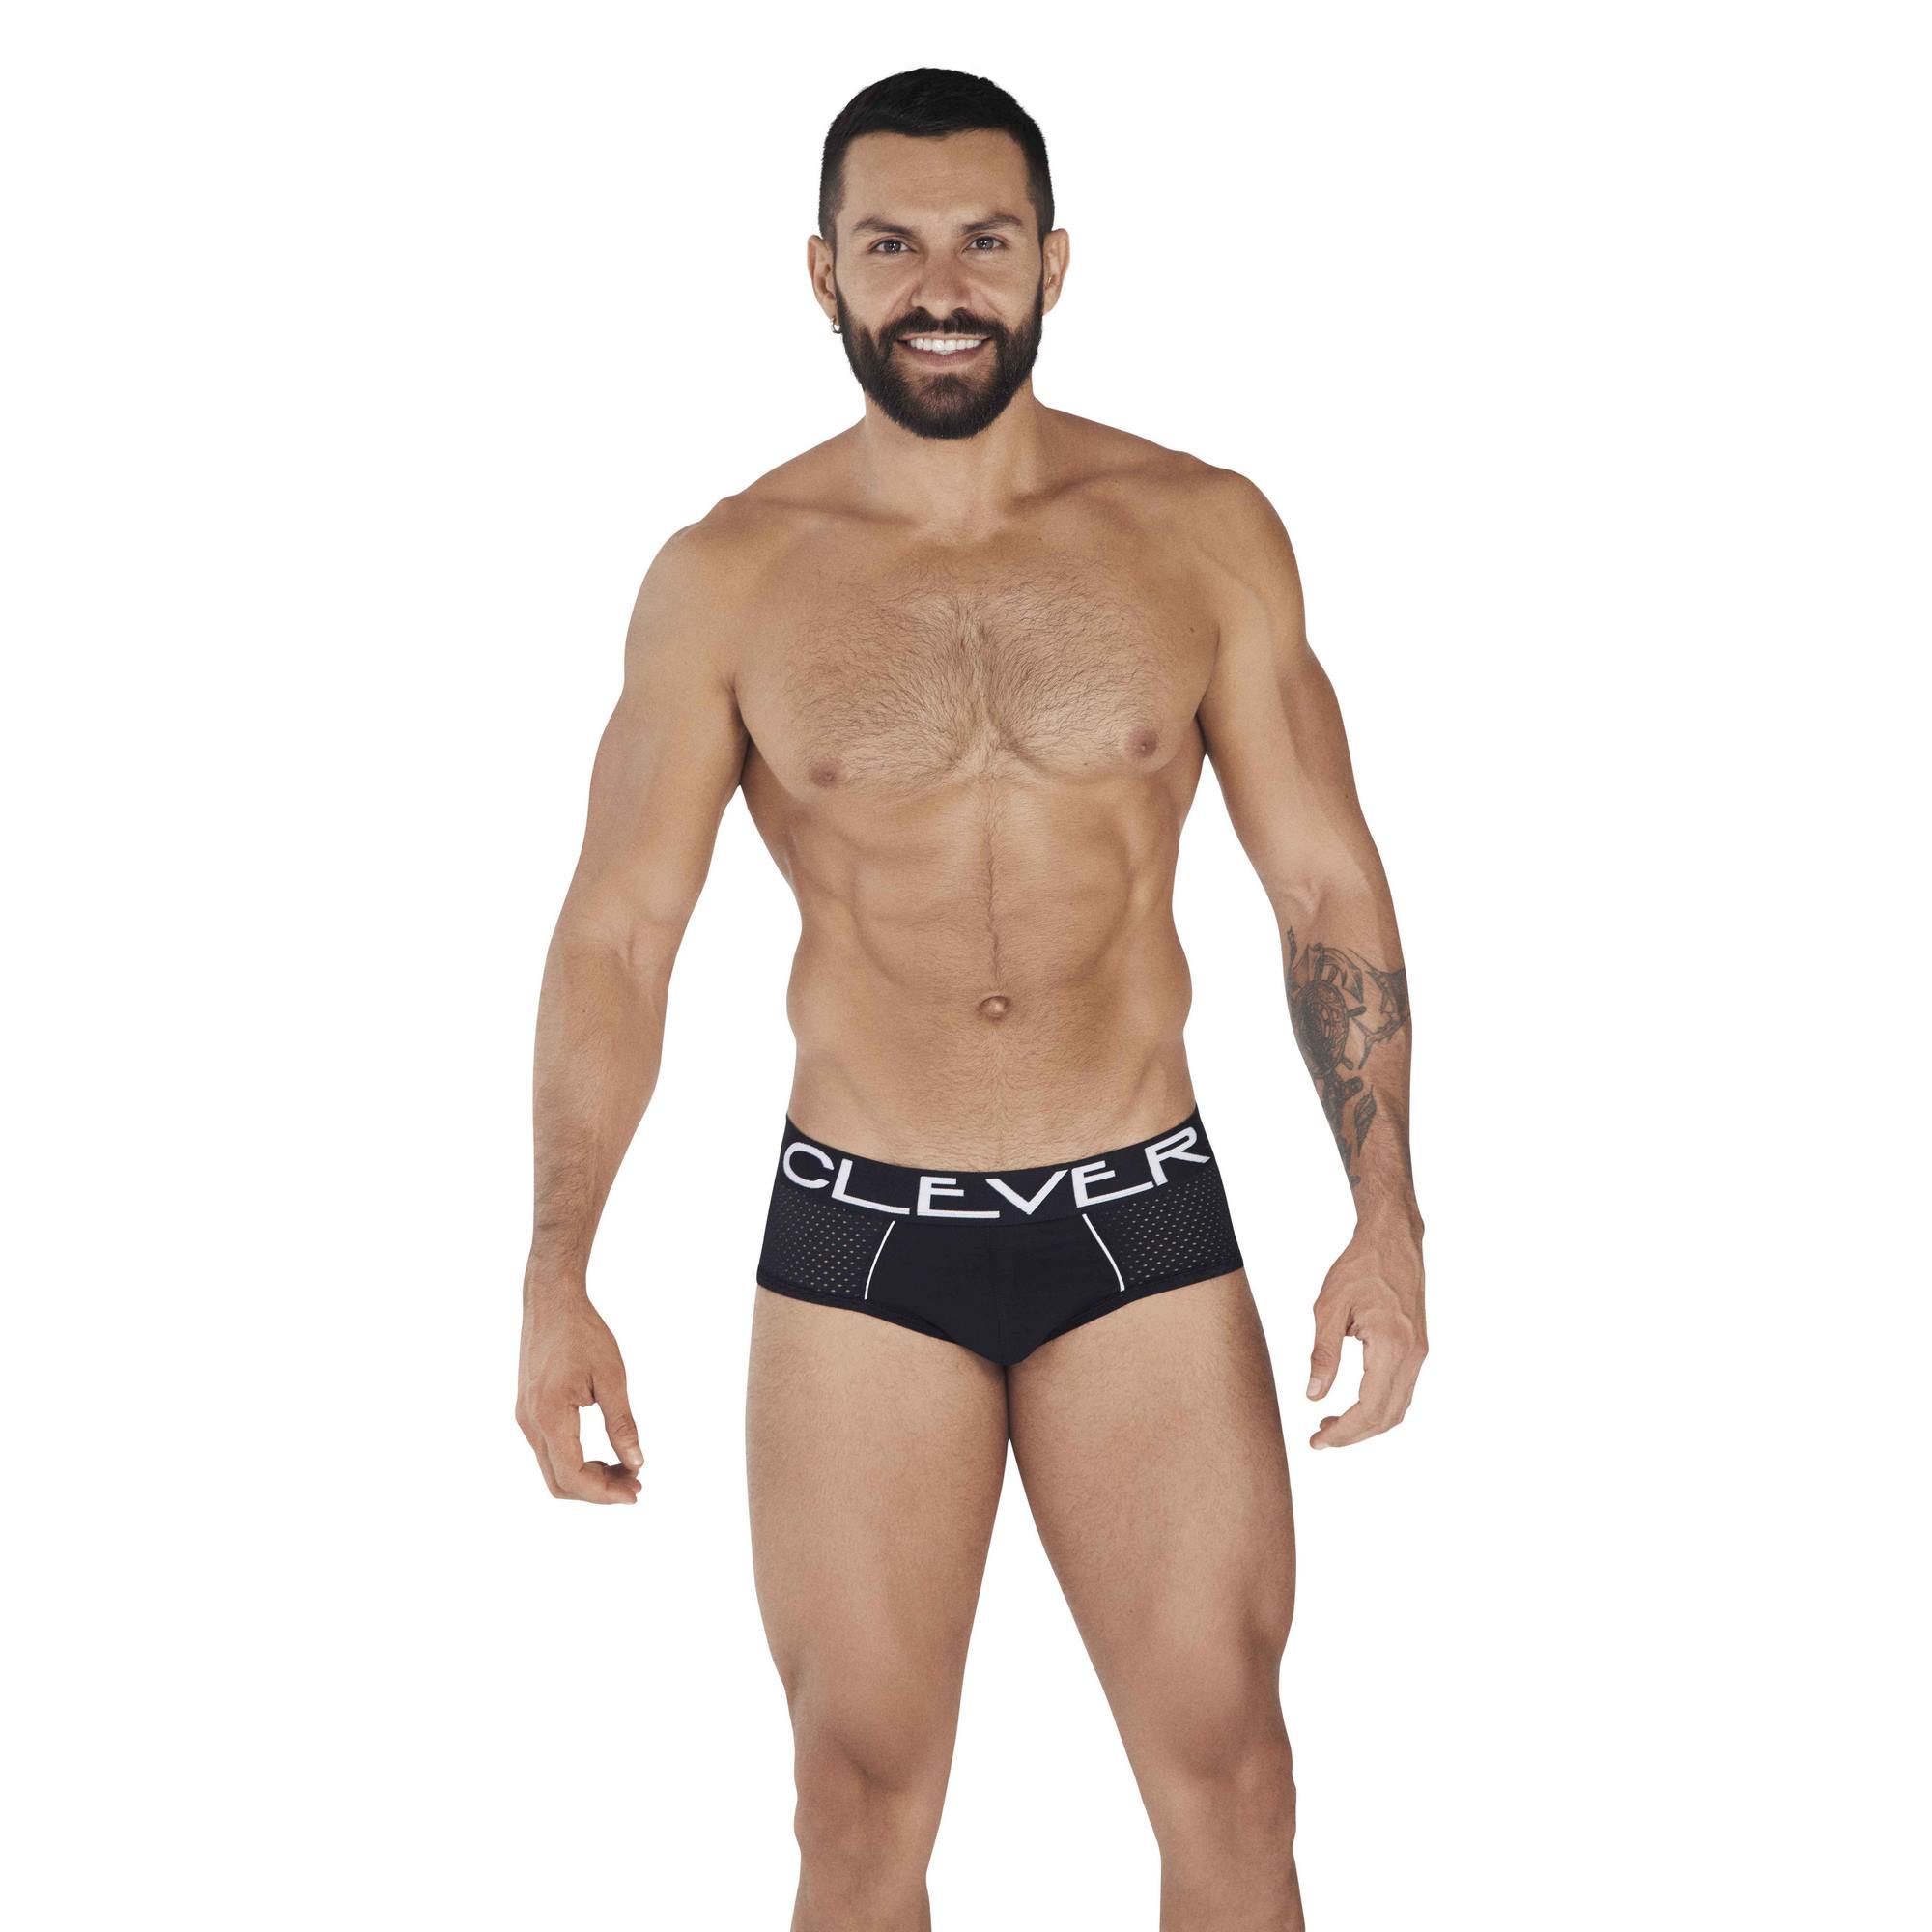 Трусы мужские Clever Masculine Underwear 0362 черные M